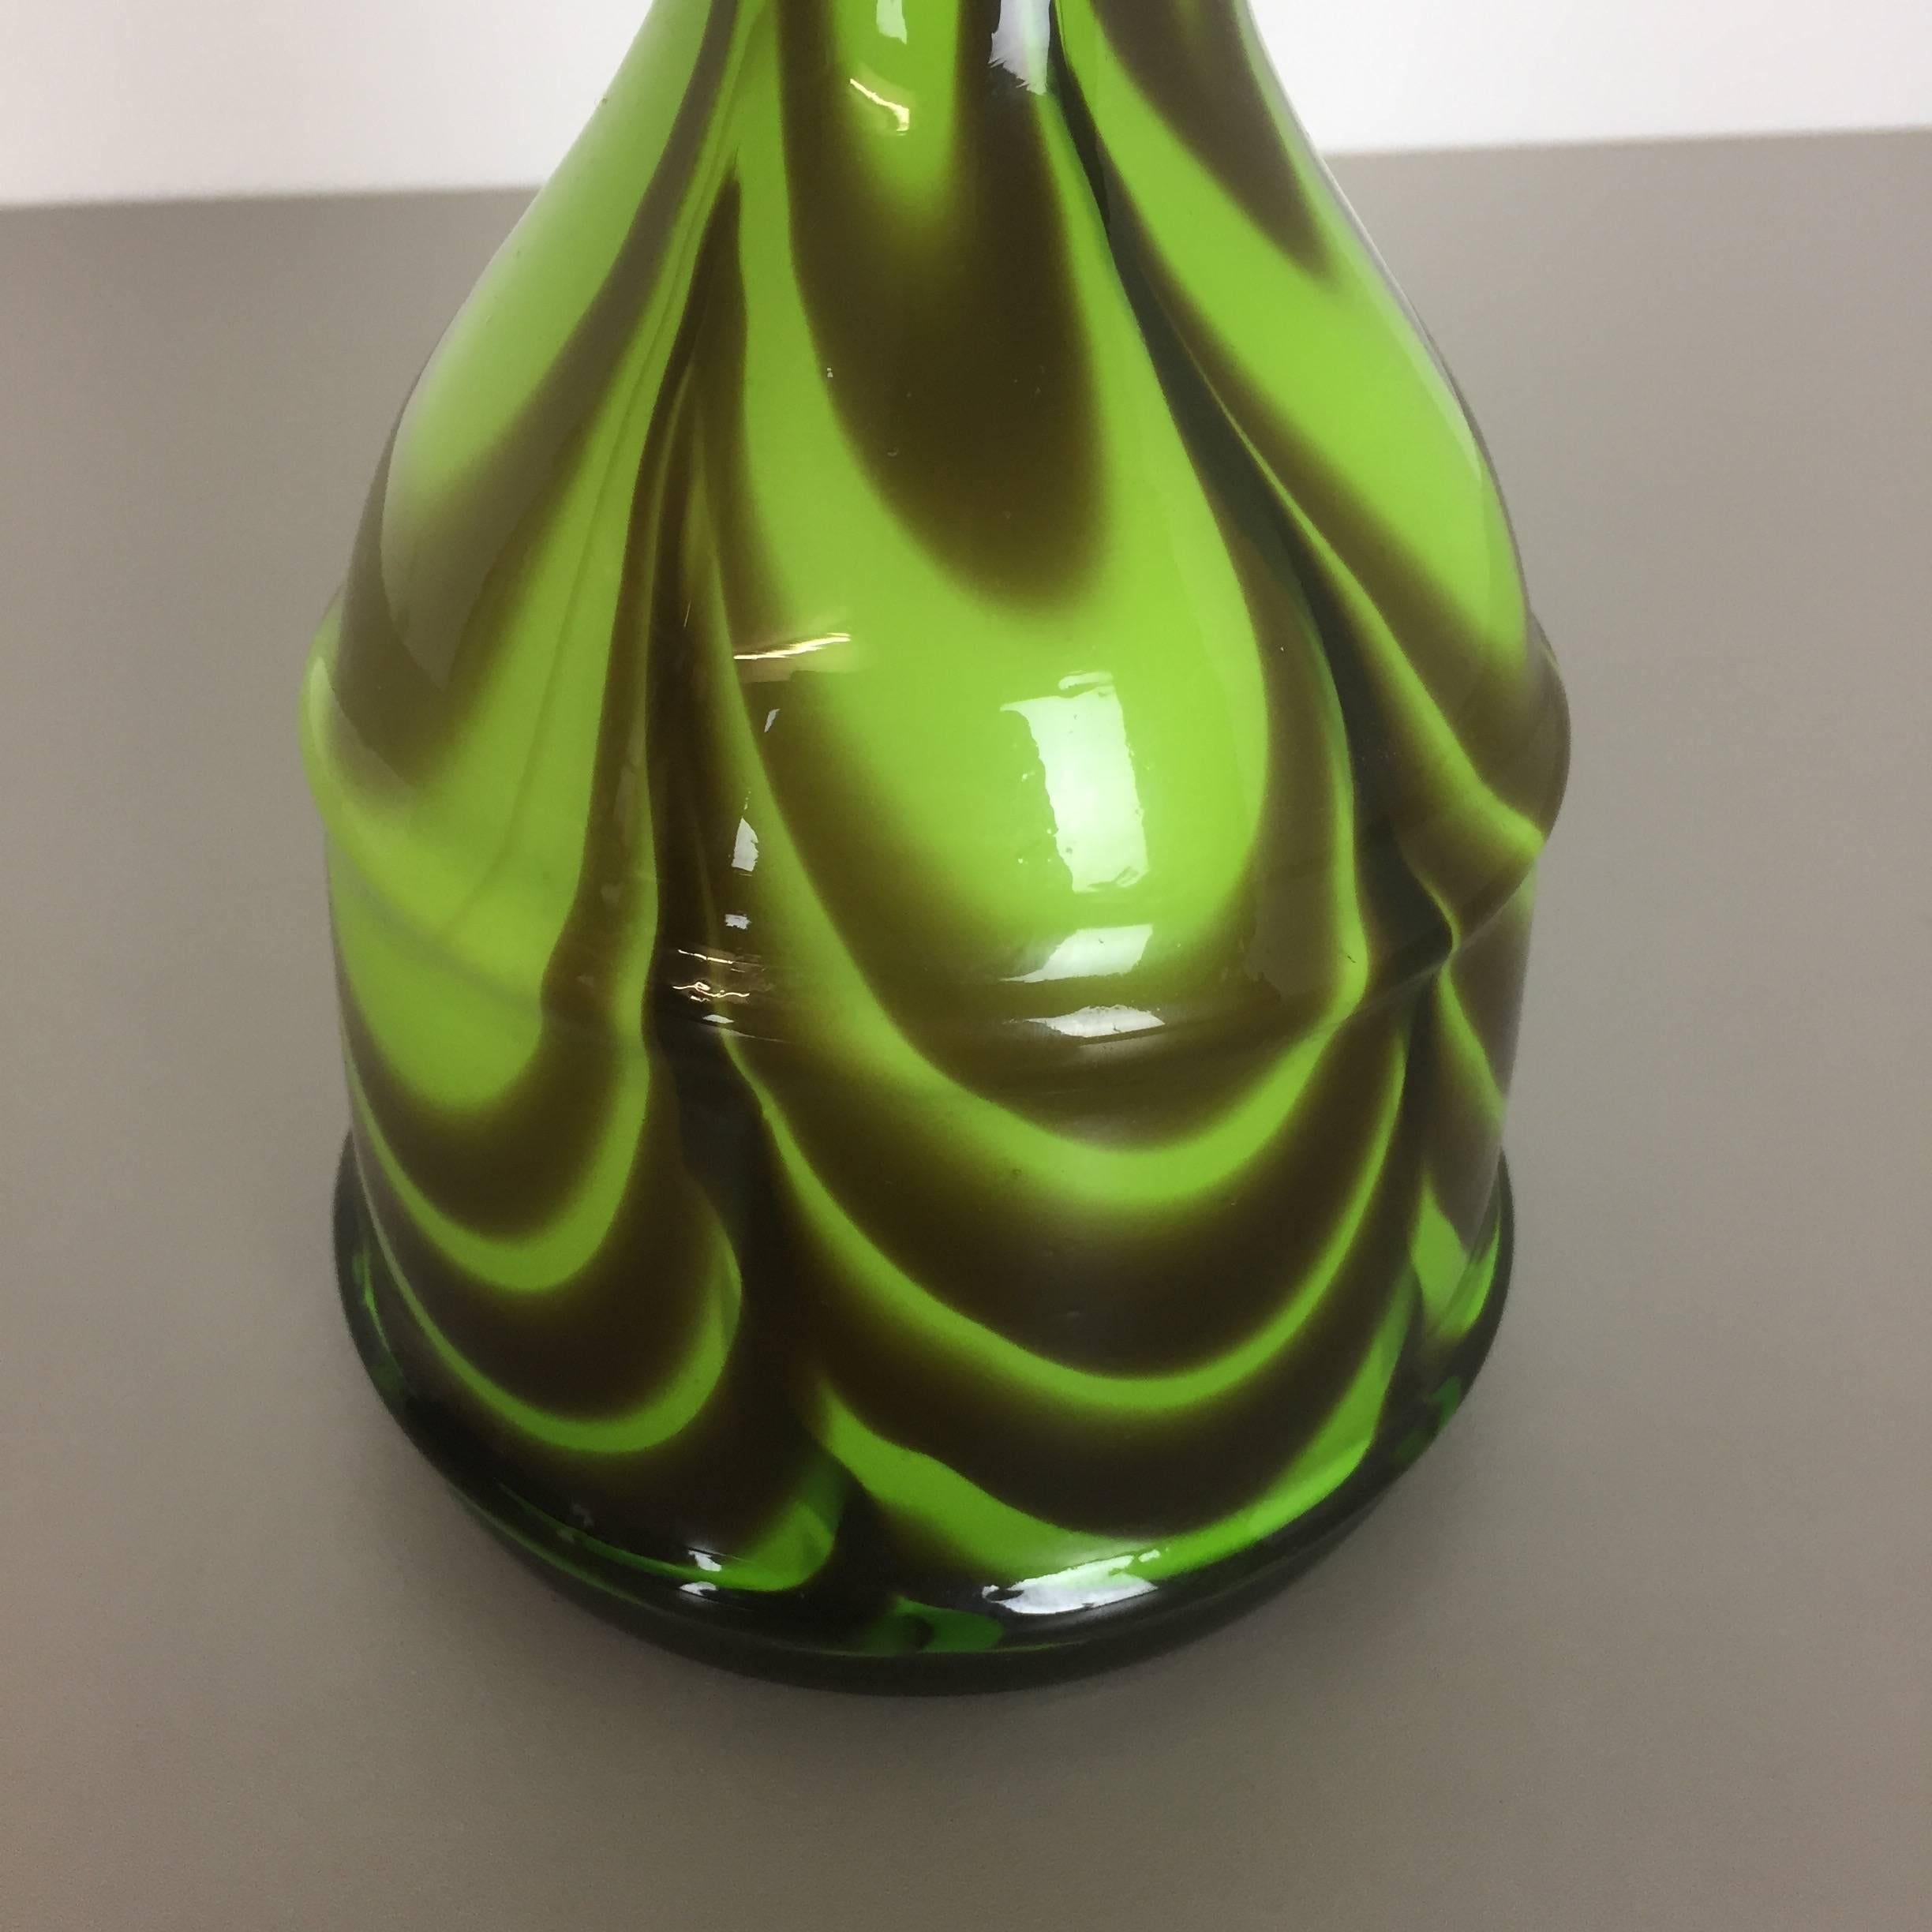 Italienische Vintage-Vase aus Opal, Florence, Design von Carlo Moretti, 1970er Jahre (20. Jahrhundert)